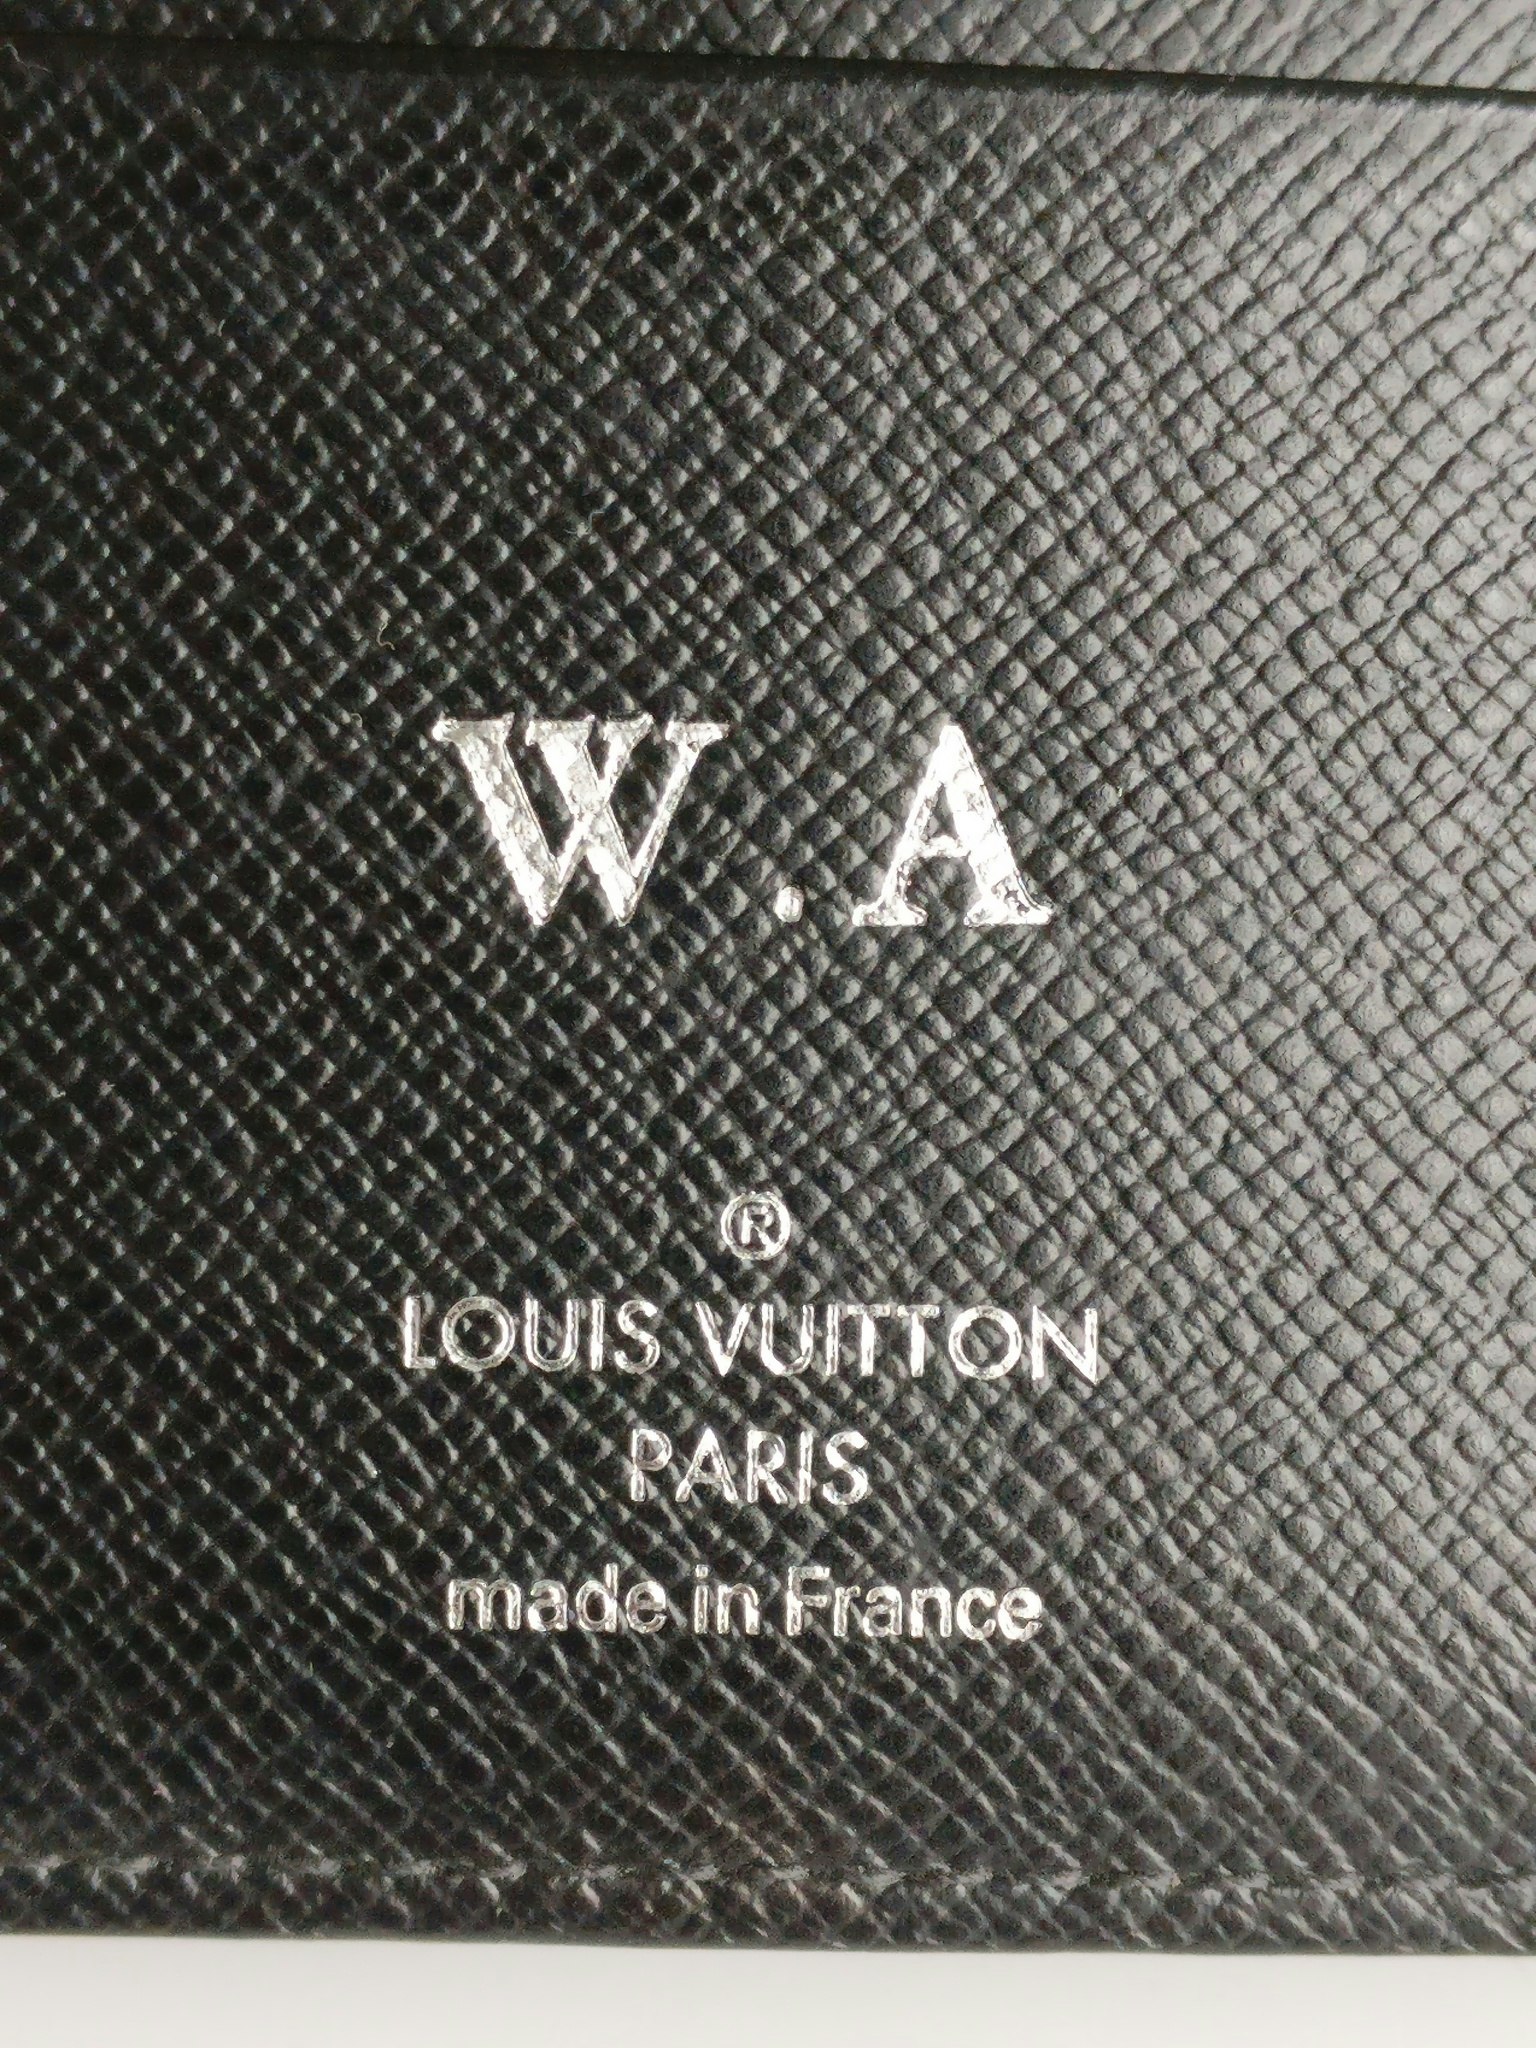 Louis Vuitton Medium Ring Agenda Cover